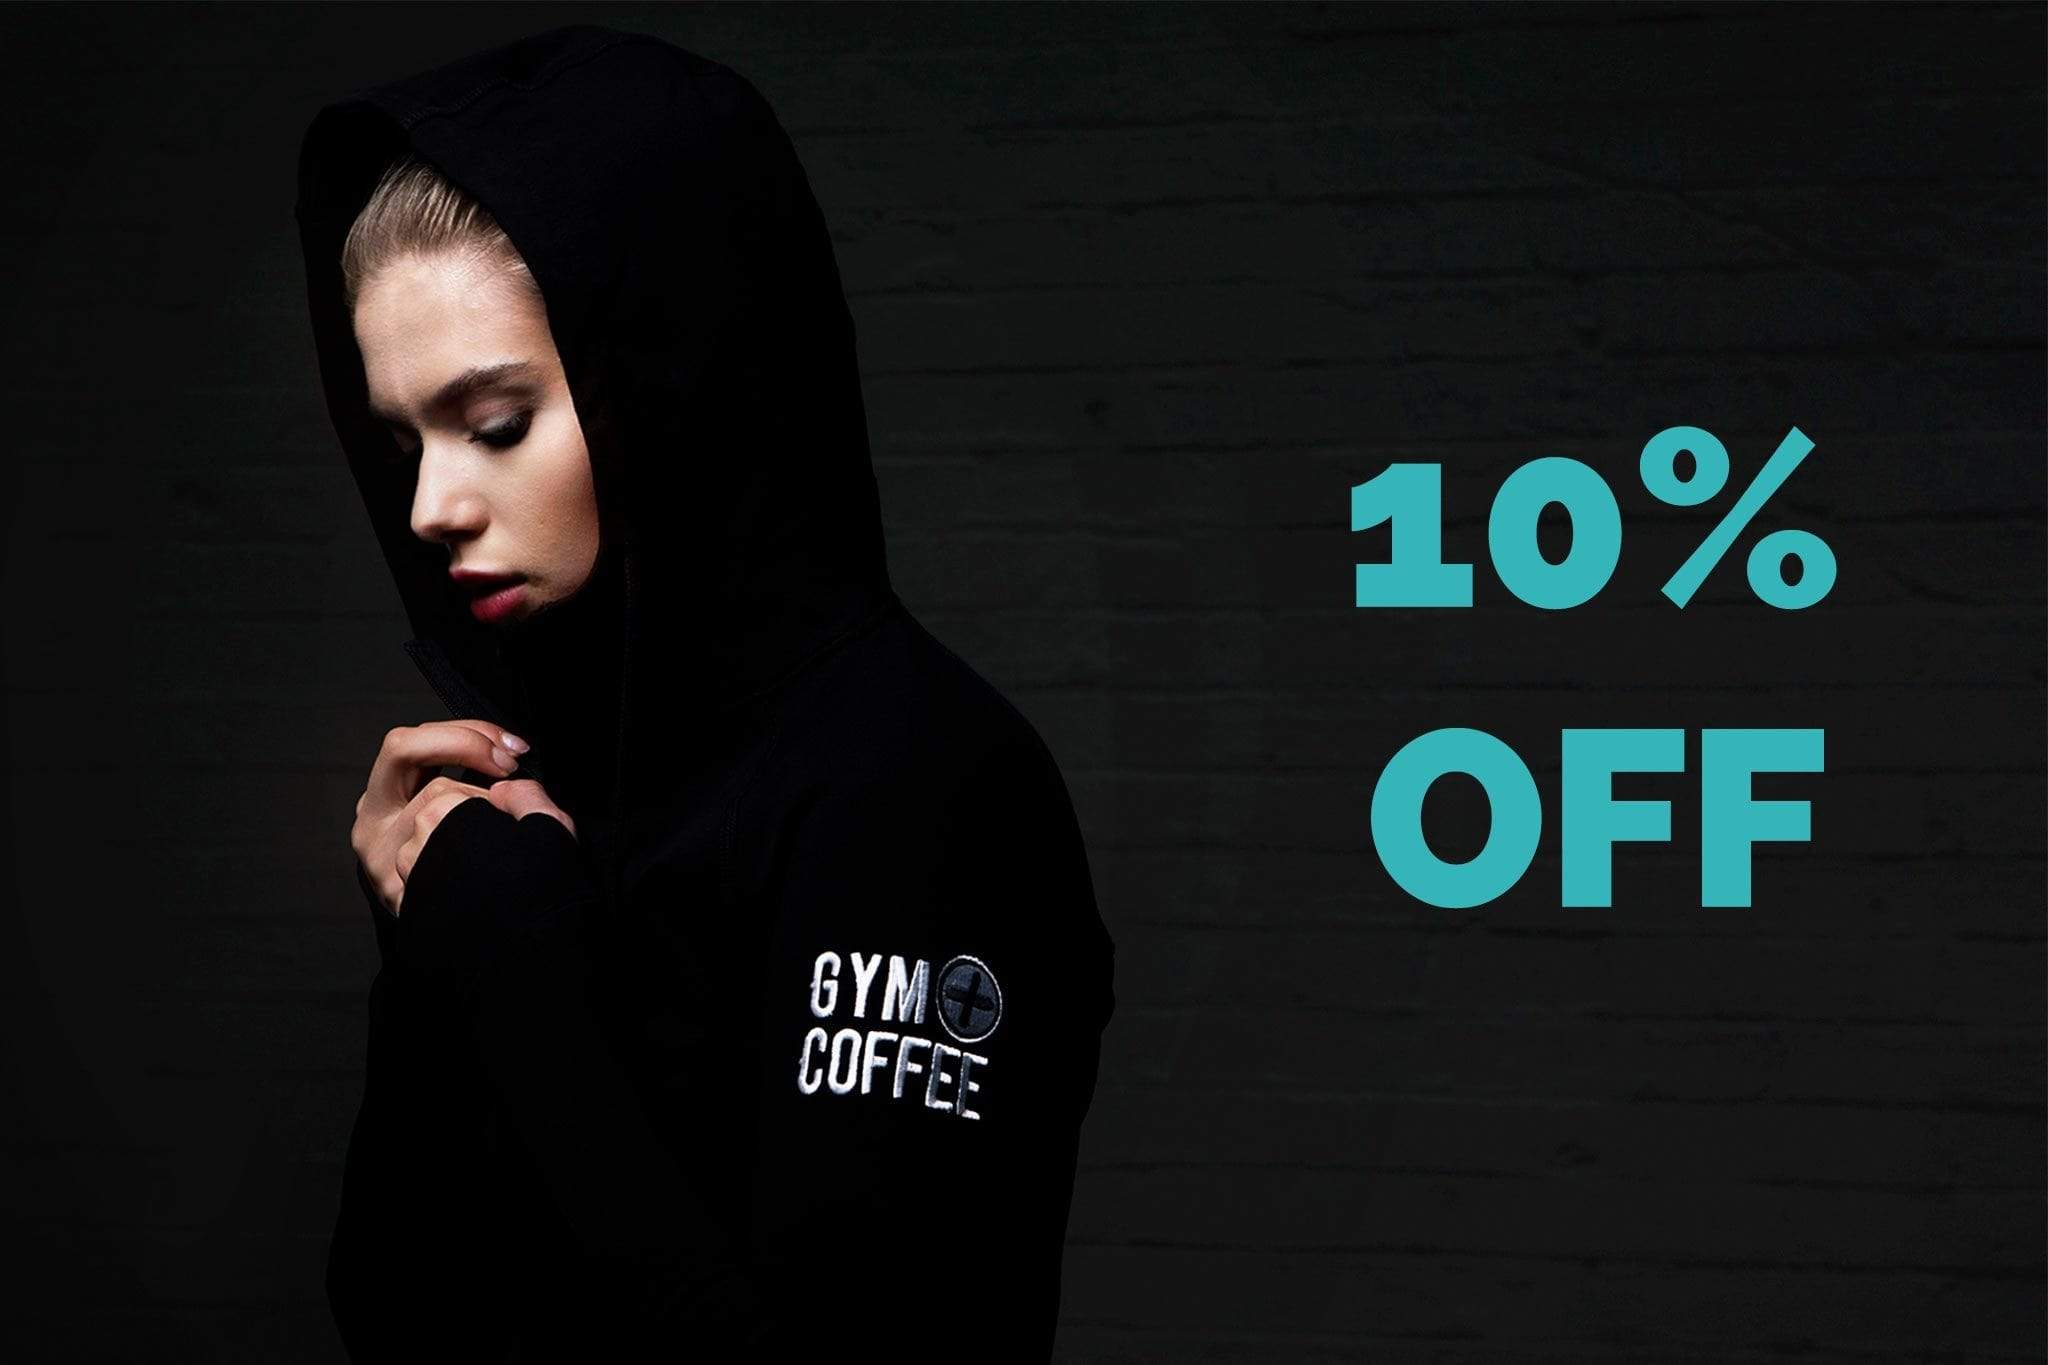 Gym+Coffee 10% Off Deals Black Friday 2019